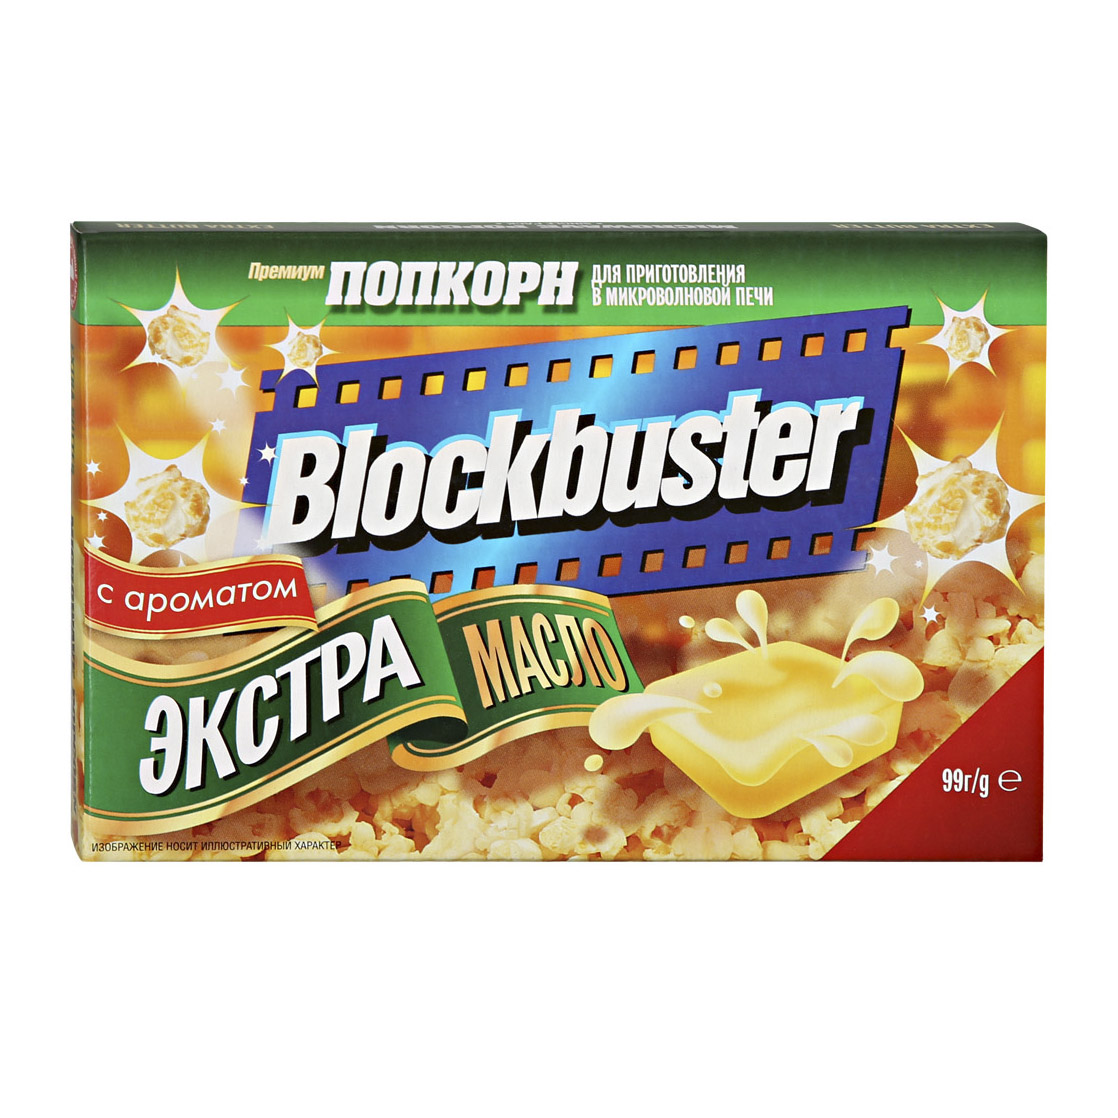 Попкорн Blockbuster Экстра масло 99 г масло валгеда сливочное крестьянское 72 5% бзмж 160 гр